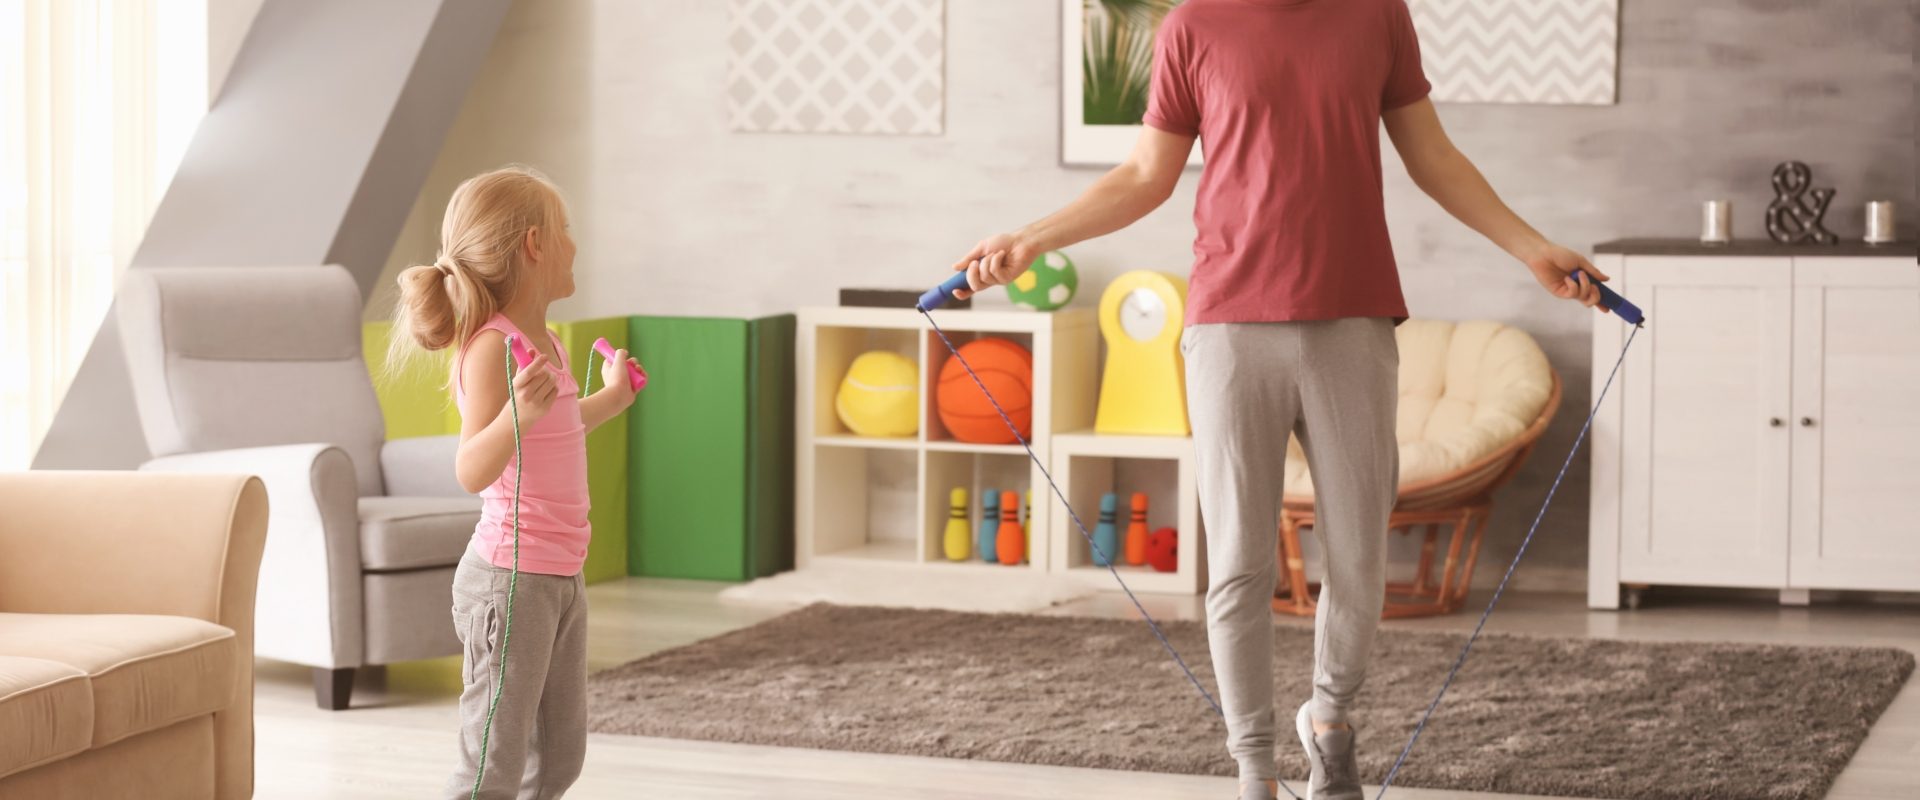 Jak ćwiczyć z dziećmi? Ojciec z córką trenują ze skakanką w domu.